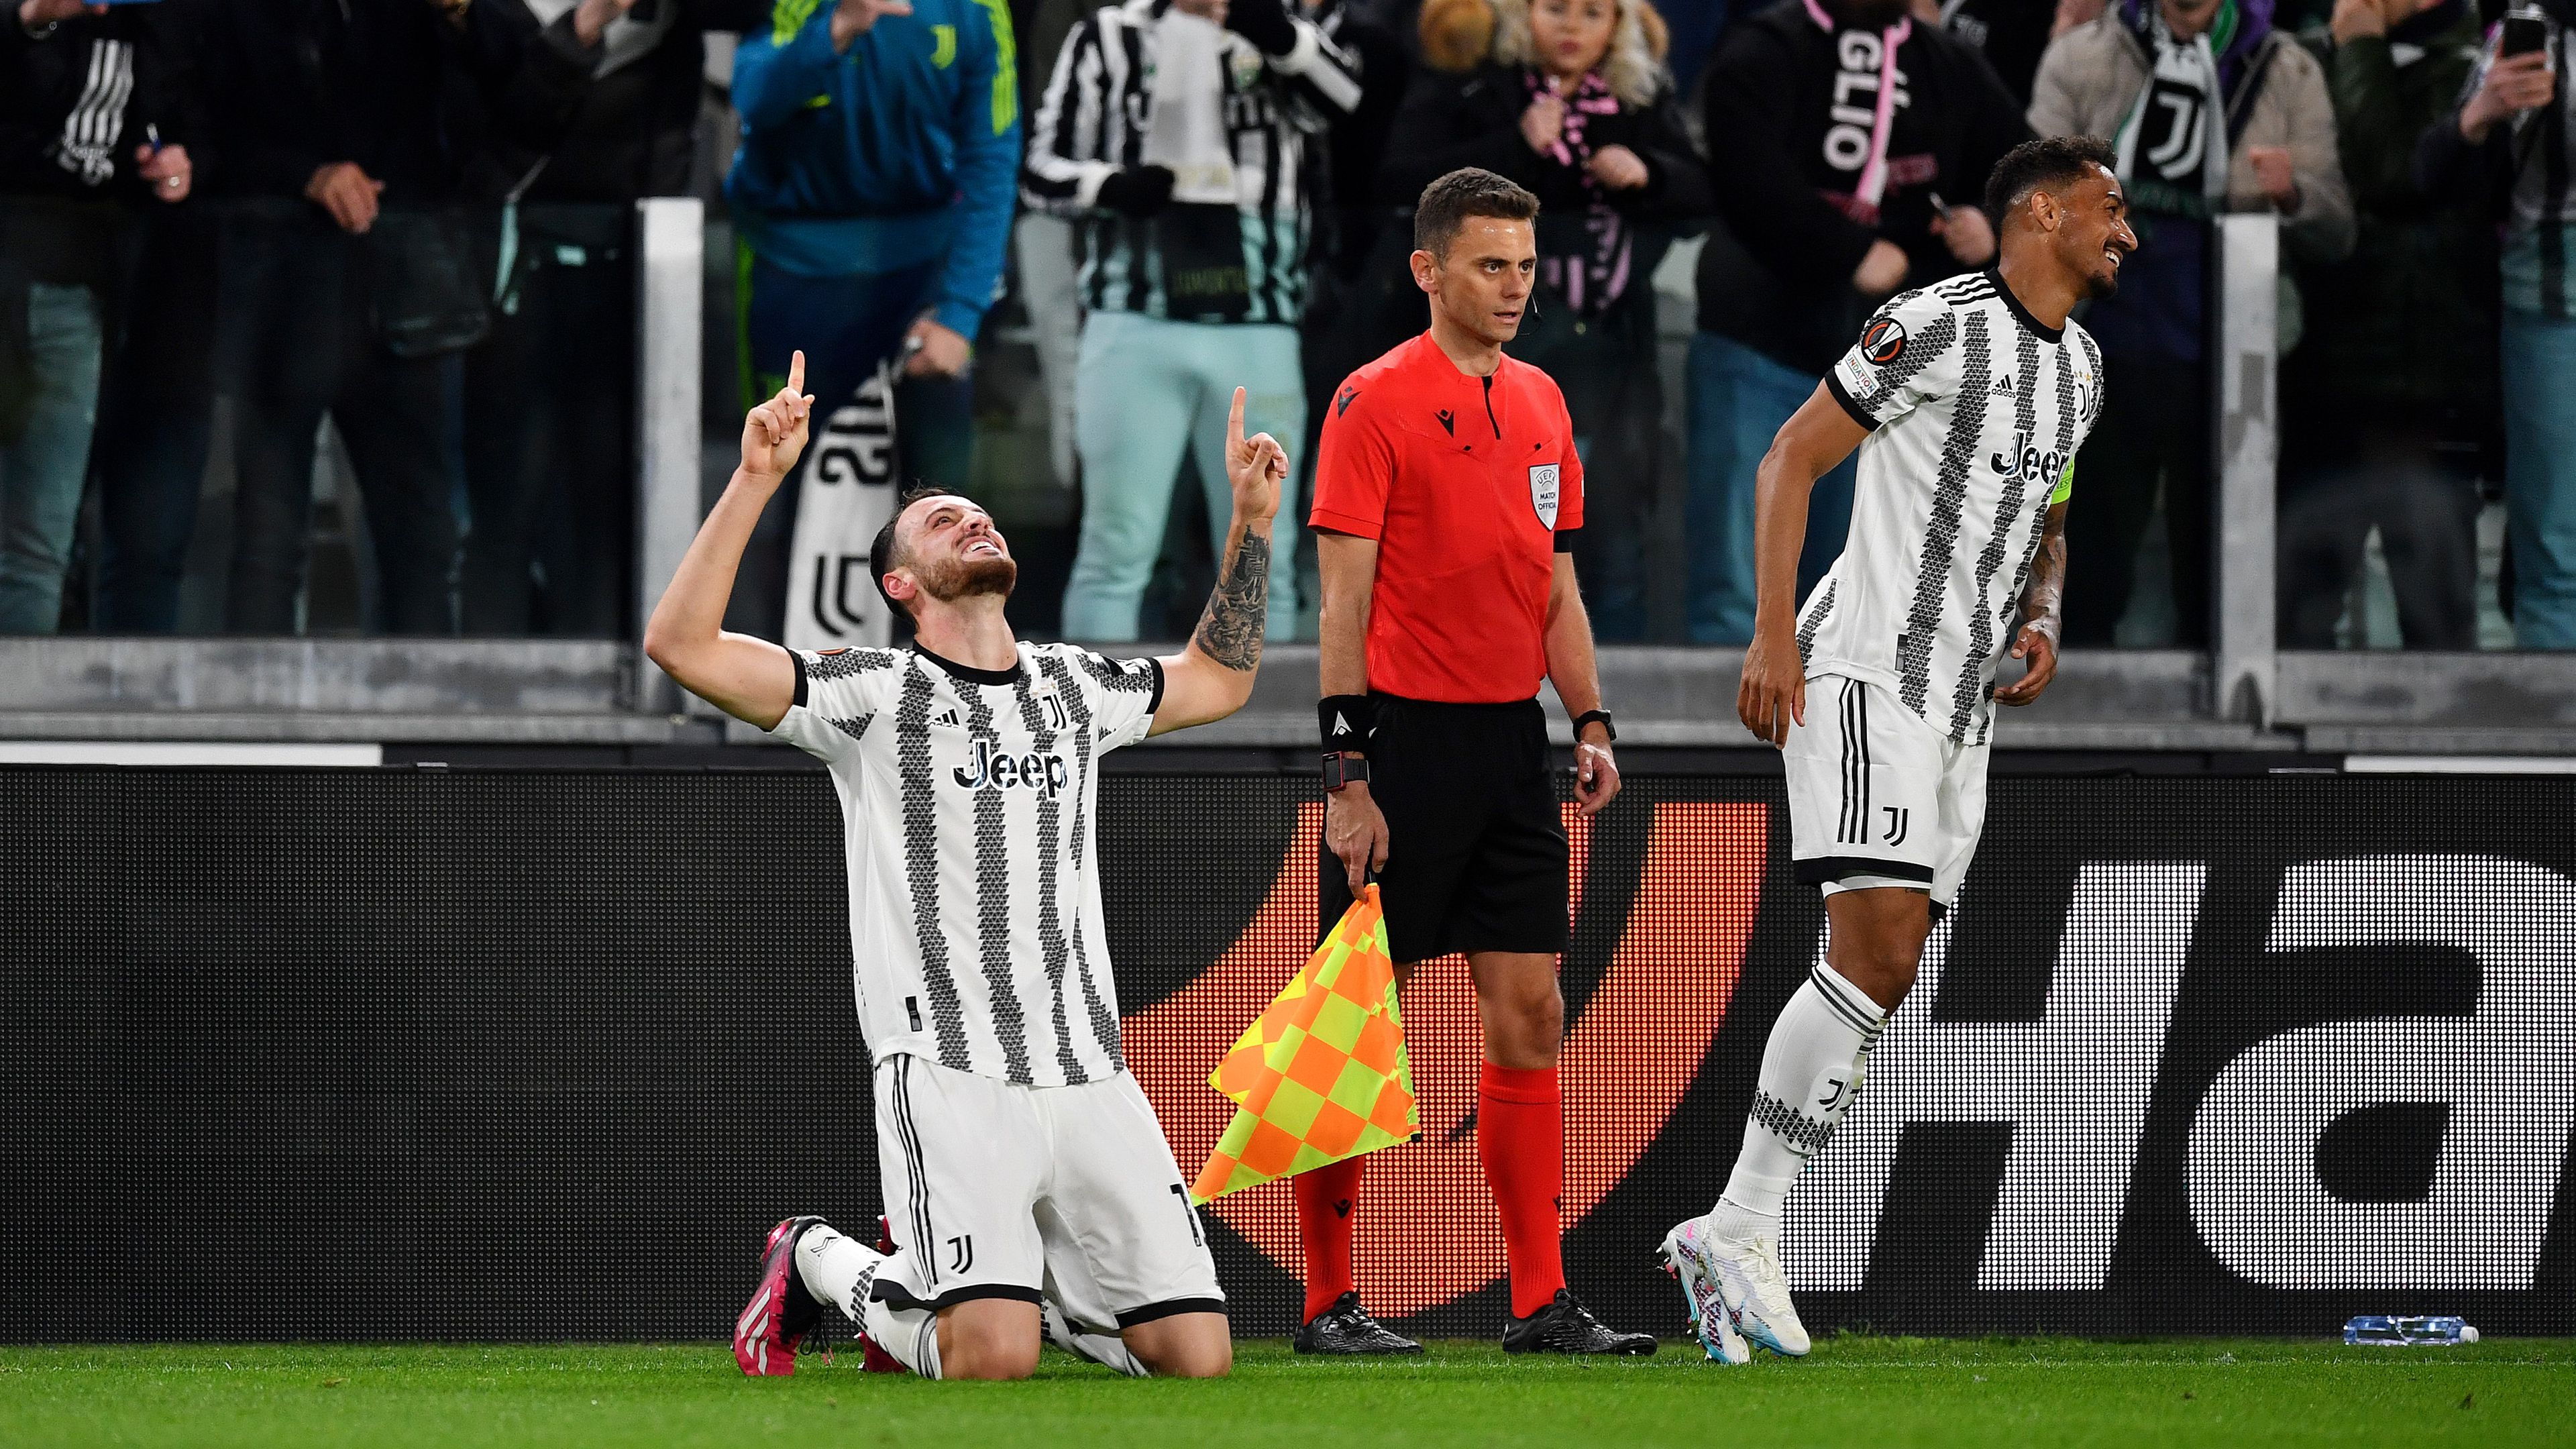 Federico Gatti megszerezte első gólját a Juventus mezében (Fotó: Getty Images)